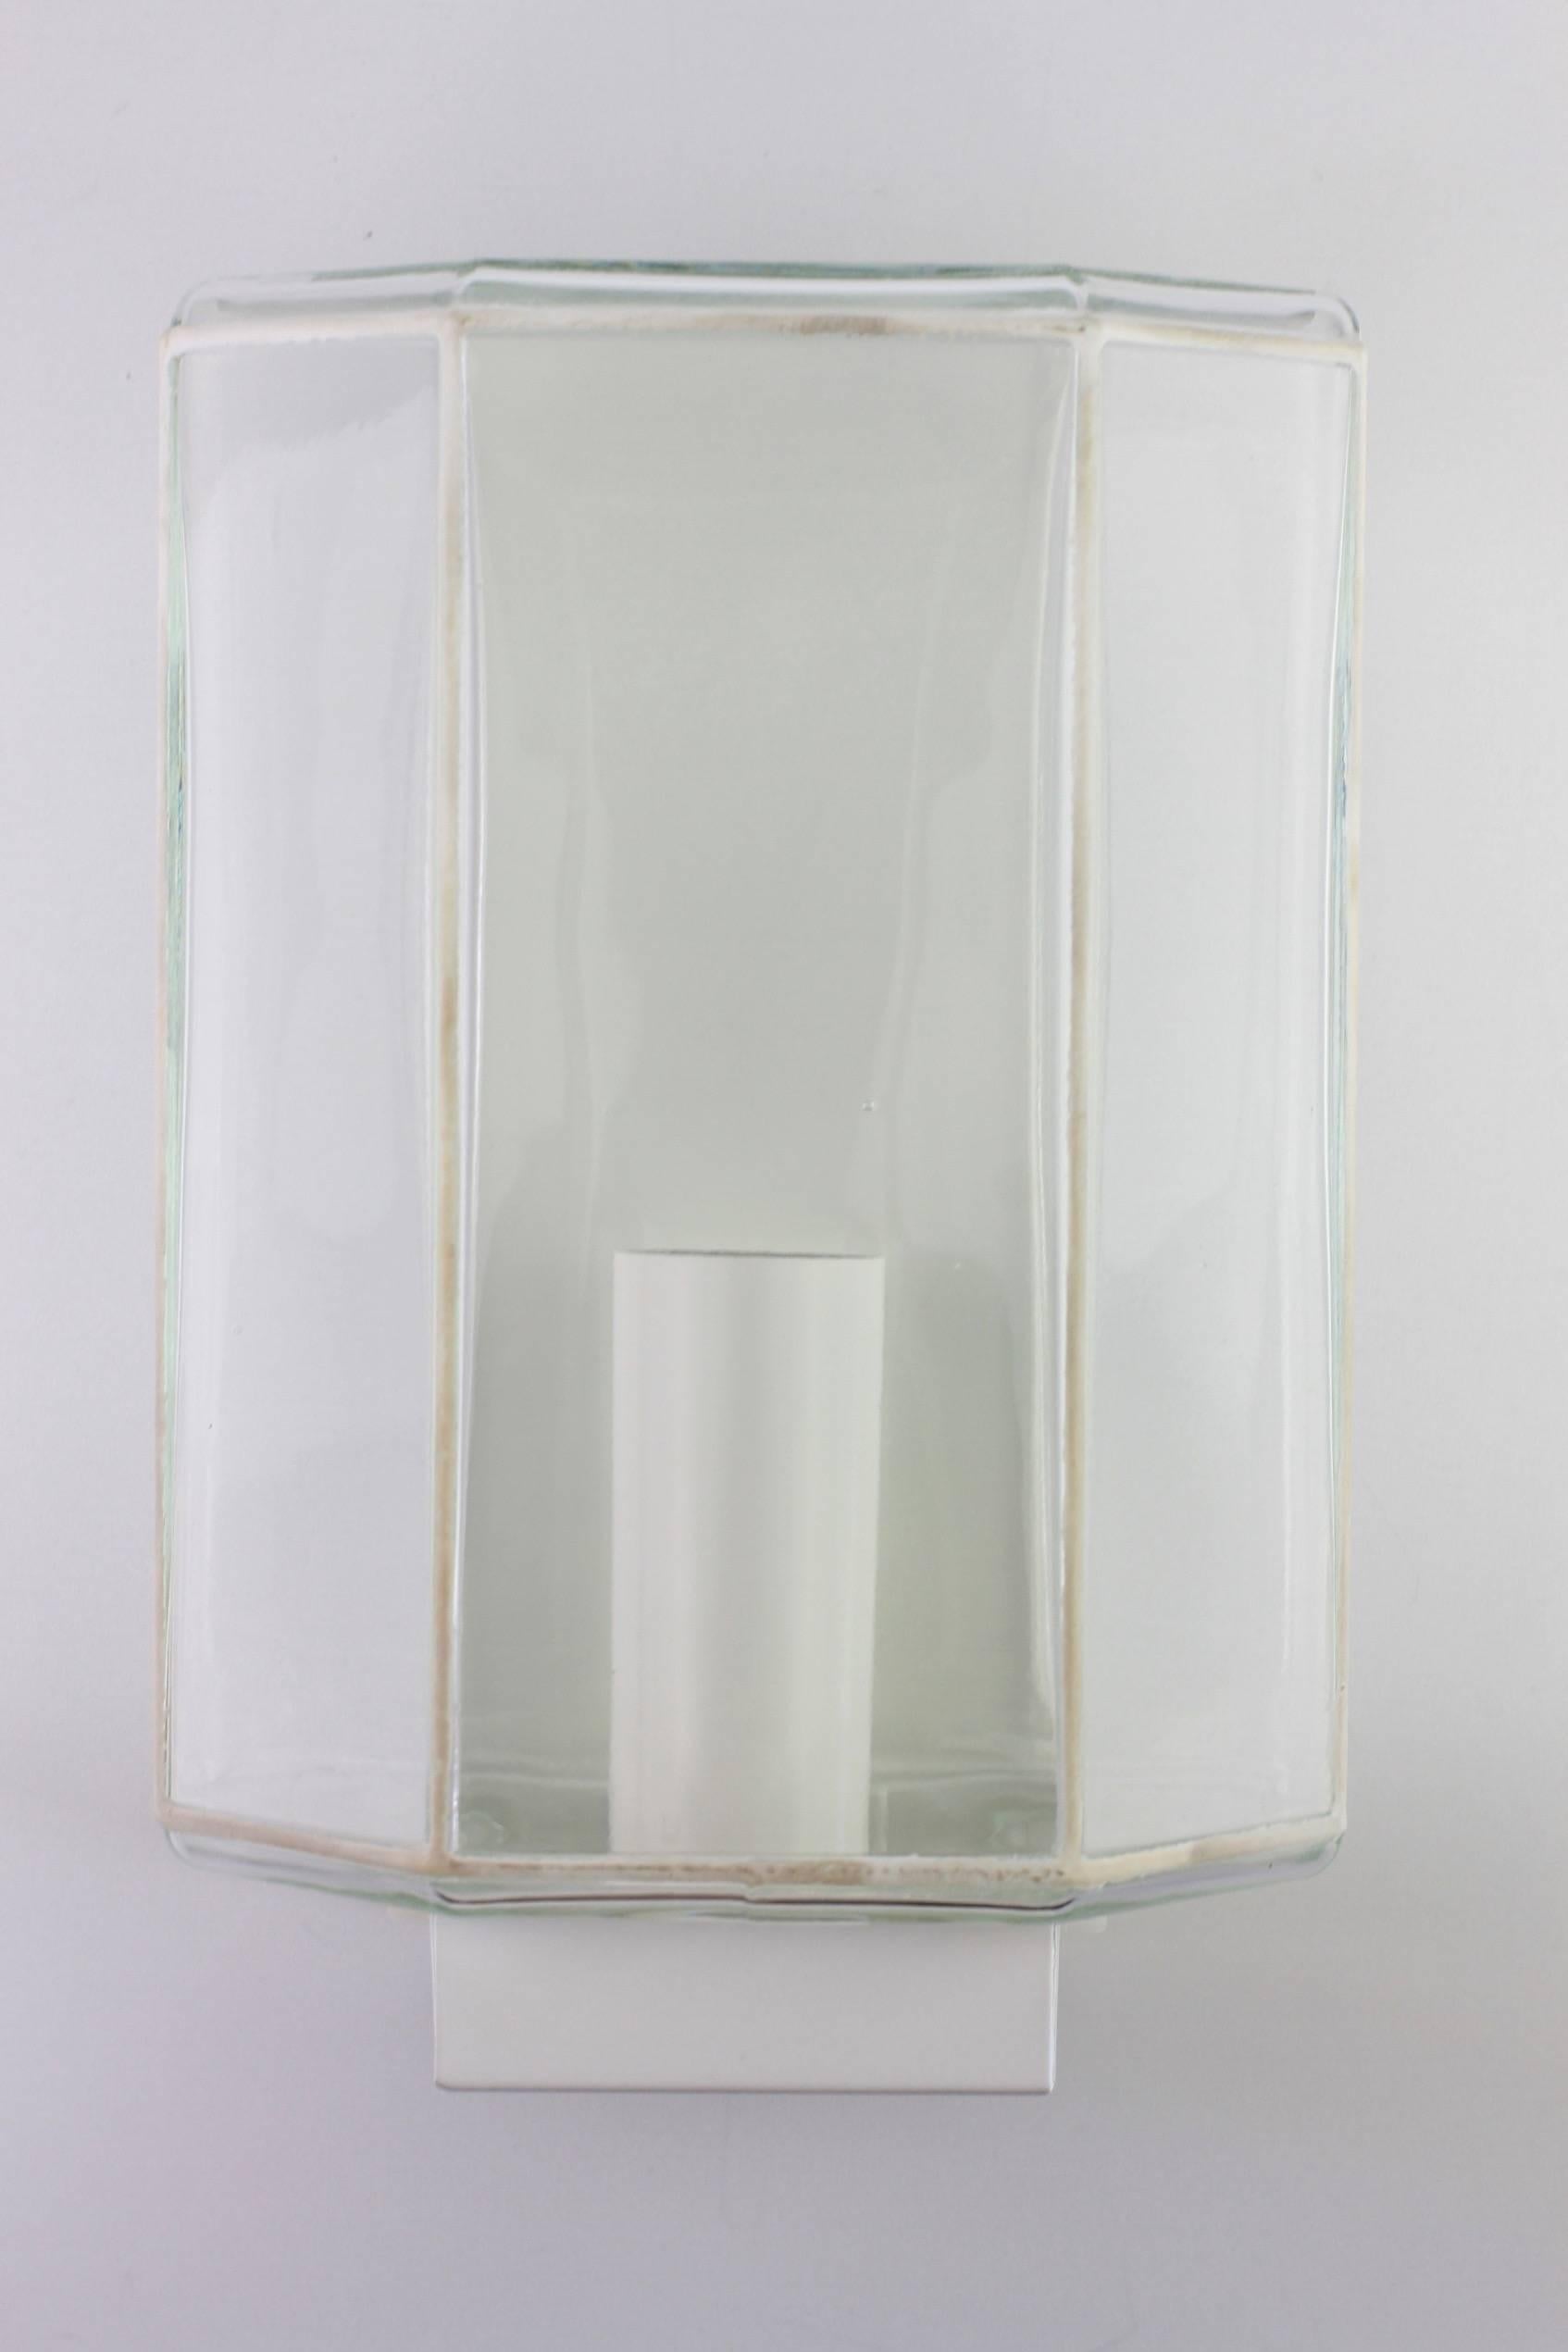 1 of 3 1970s Minimalist White and Clear Glass Wall Lights by Glashütte Limburg  (Moderne der Mitte des Jahrhunderts)